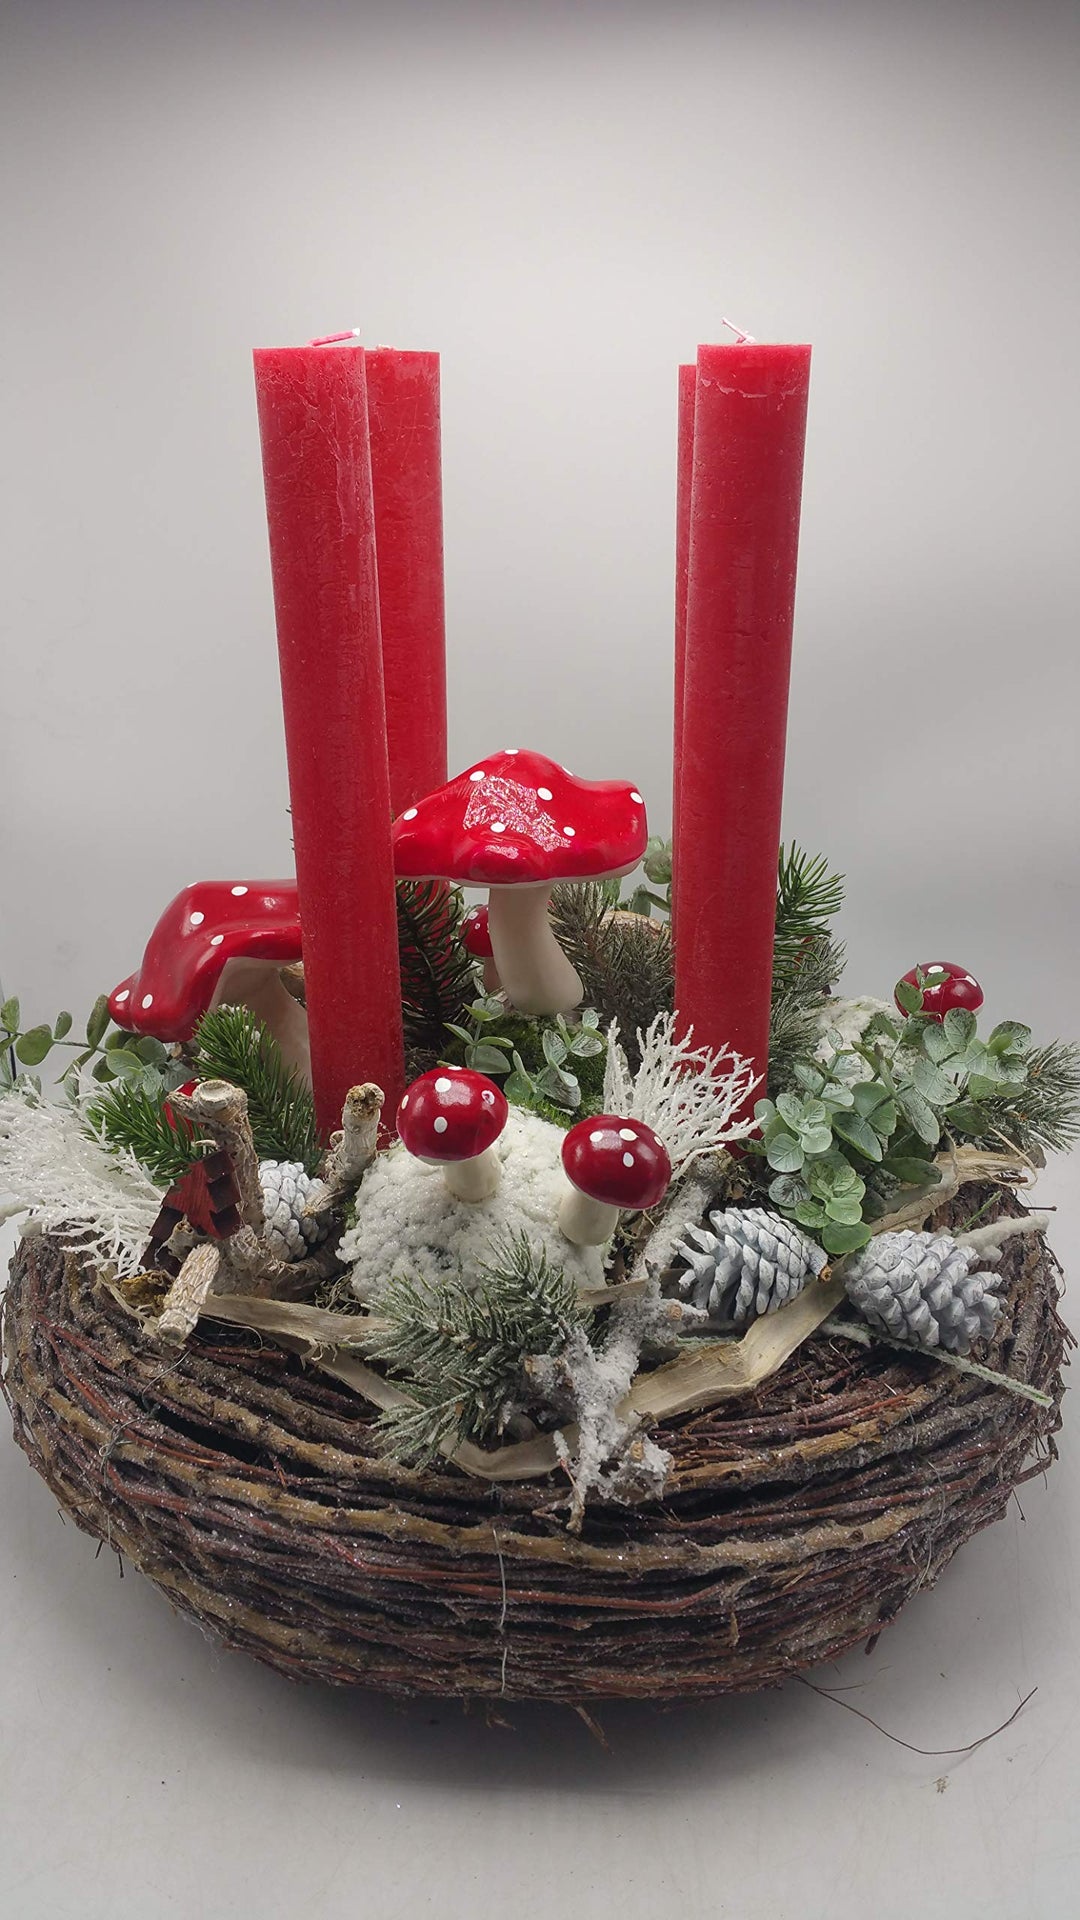 Weihnachtskranz Seidenblumengesteck Adventskranz Kerzen Pilze Zapfen Tanne XXL